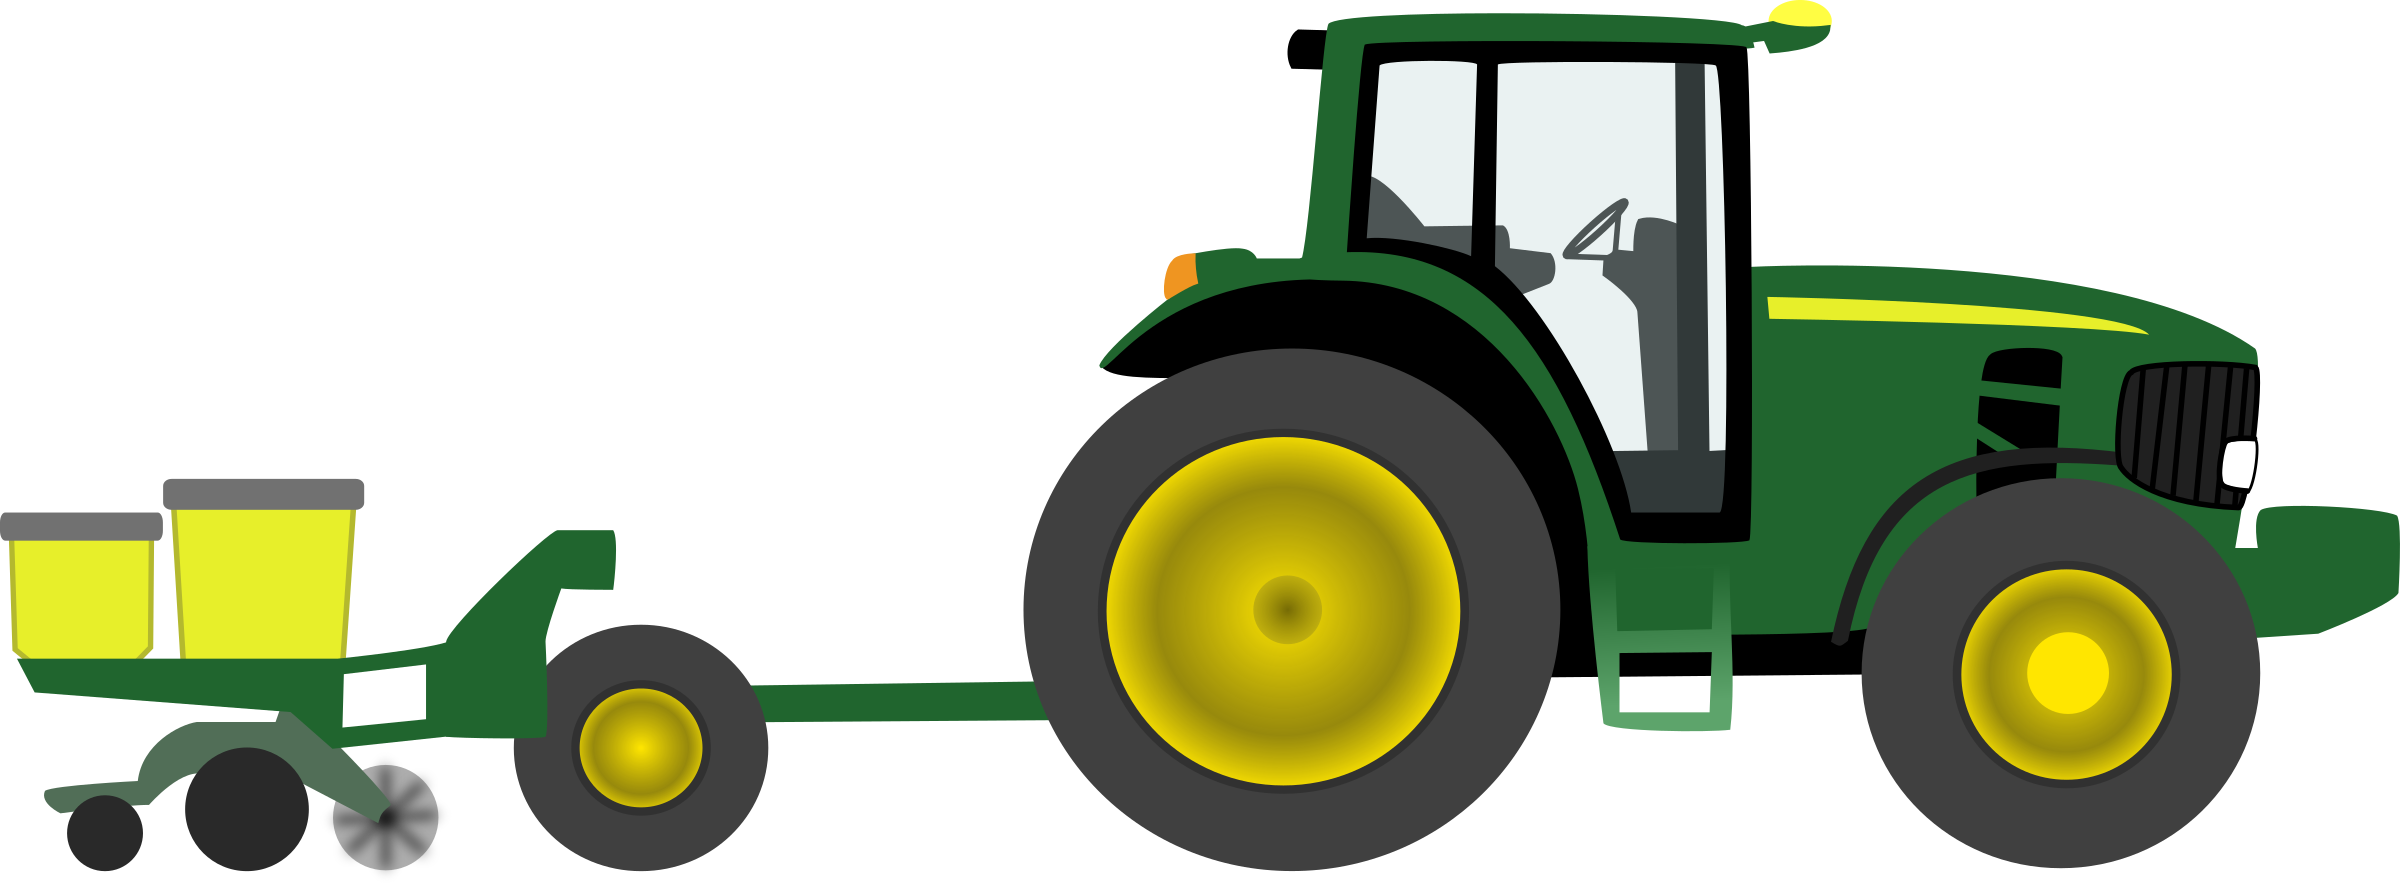 Зеленый трактор прозрачный образ